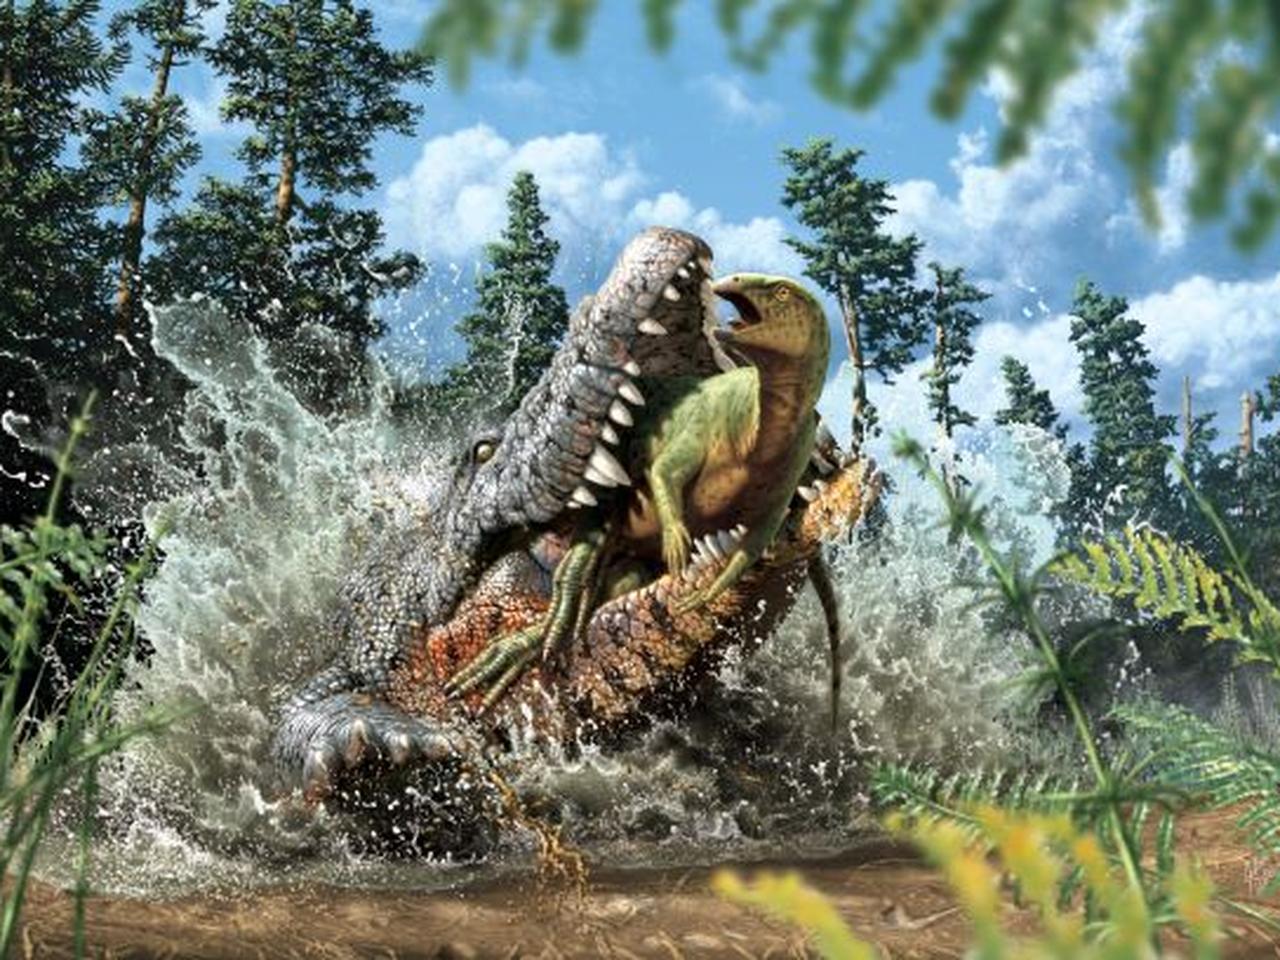 Gdzie latały pterozaury? Paleontolodzy odkryli nowy gatunek latającego gada  - National Geographic